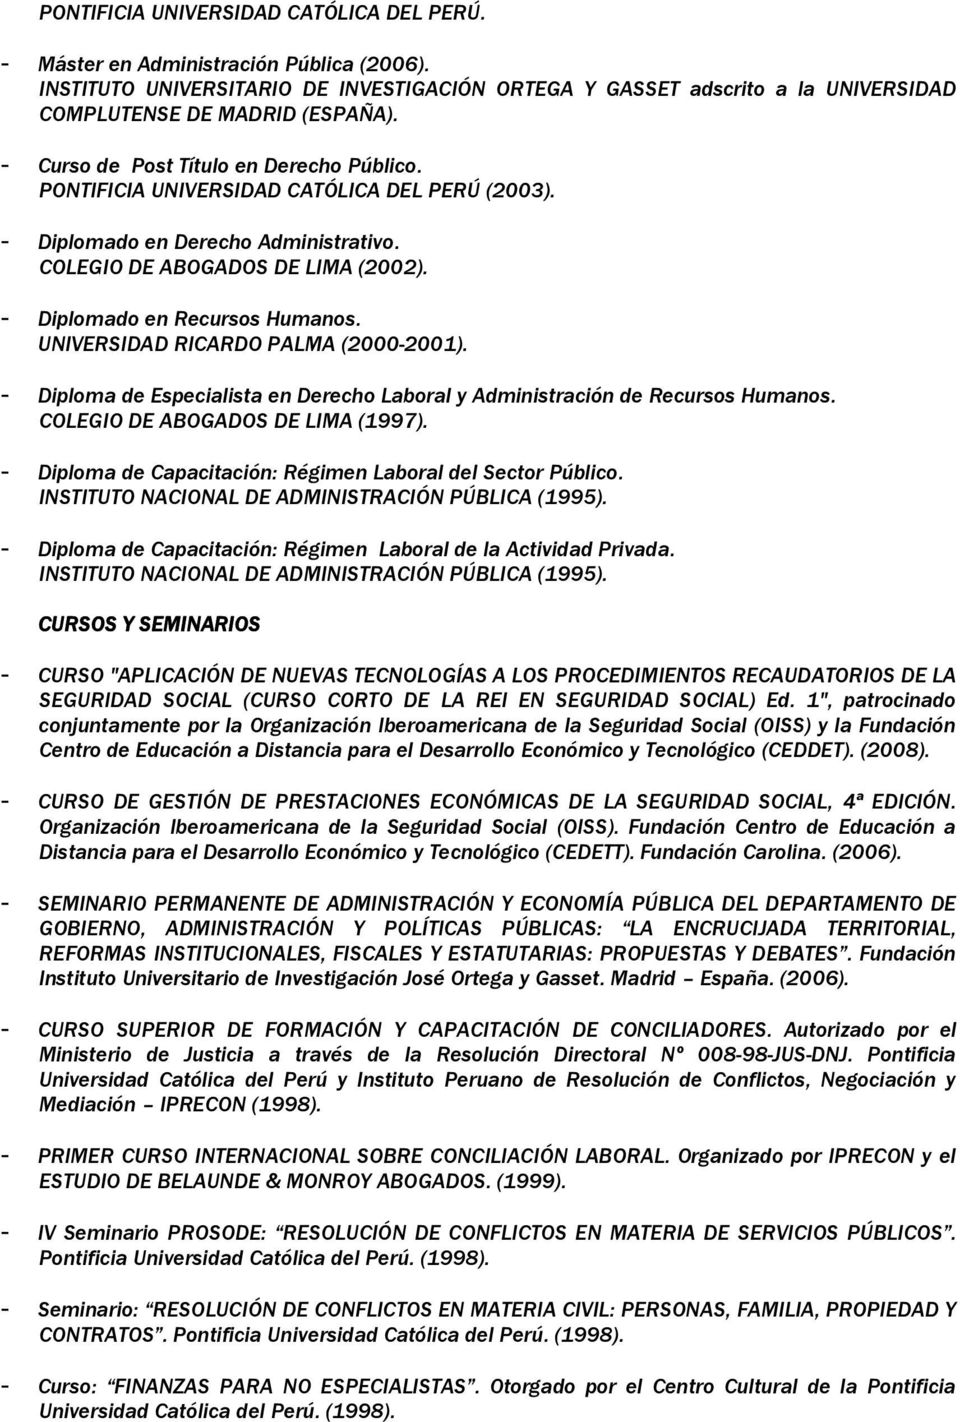 UNIVERSIDAD RICARDO PALMA (2000-2001). - Diplma de Especialista en Derech Labral y Administración de Recurss Humans. COLEGIO DE ABOGADOS DE LIMA (1997).